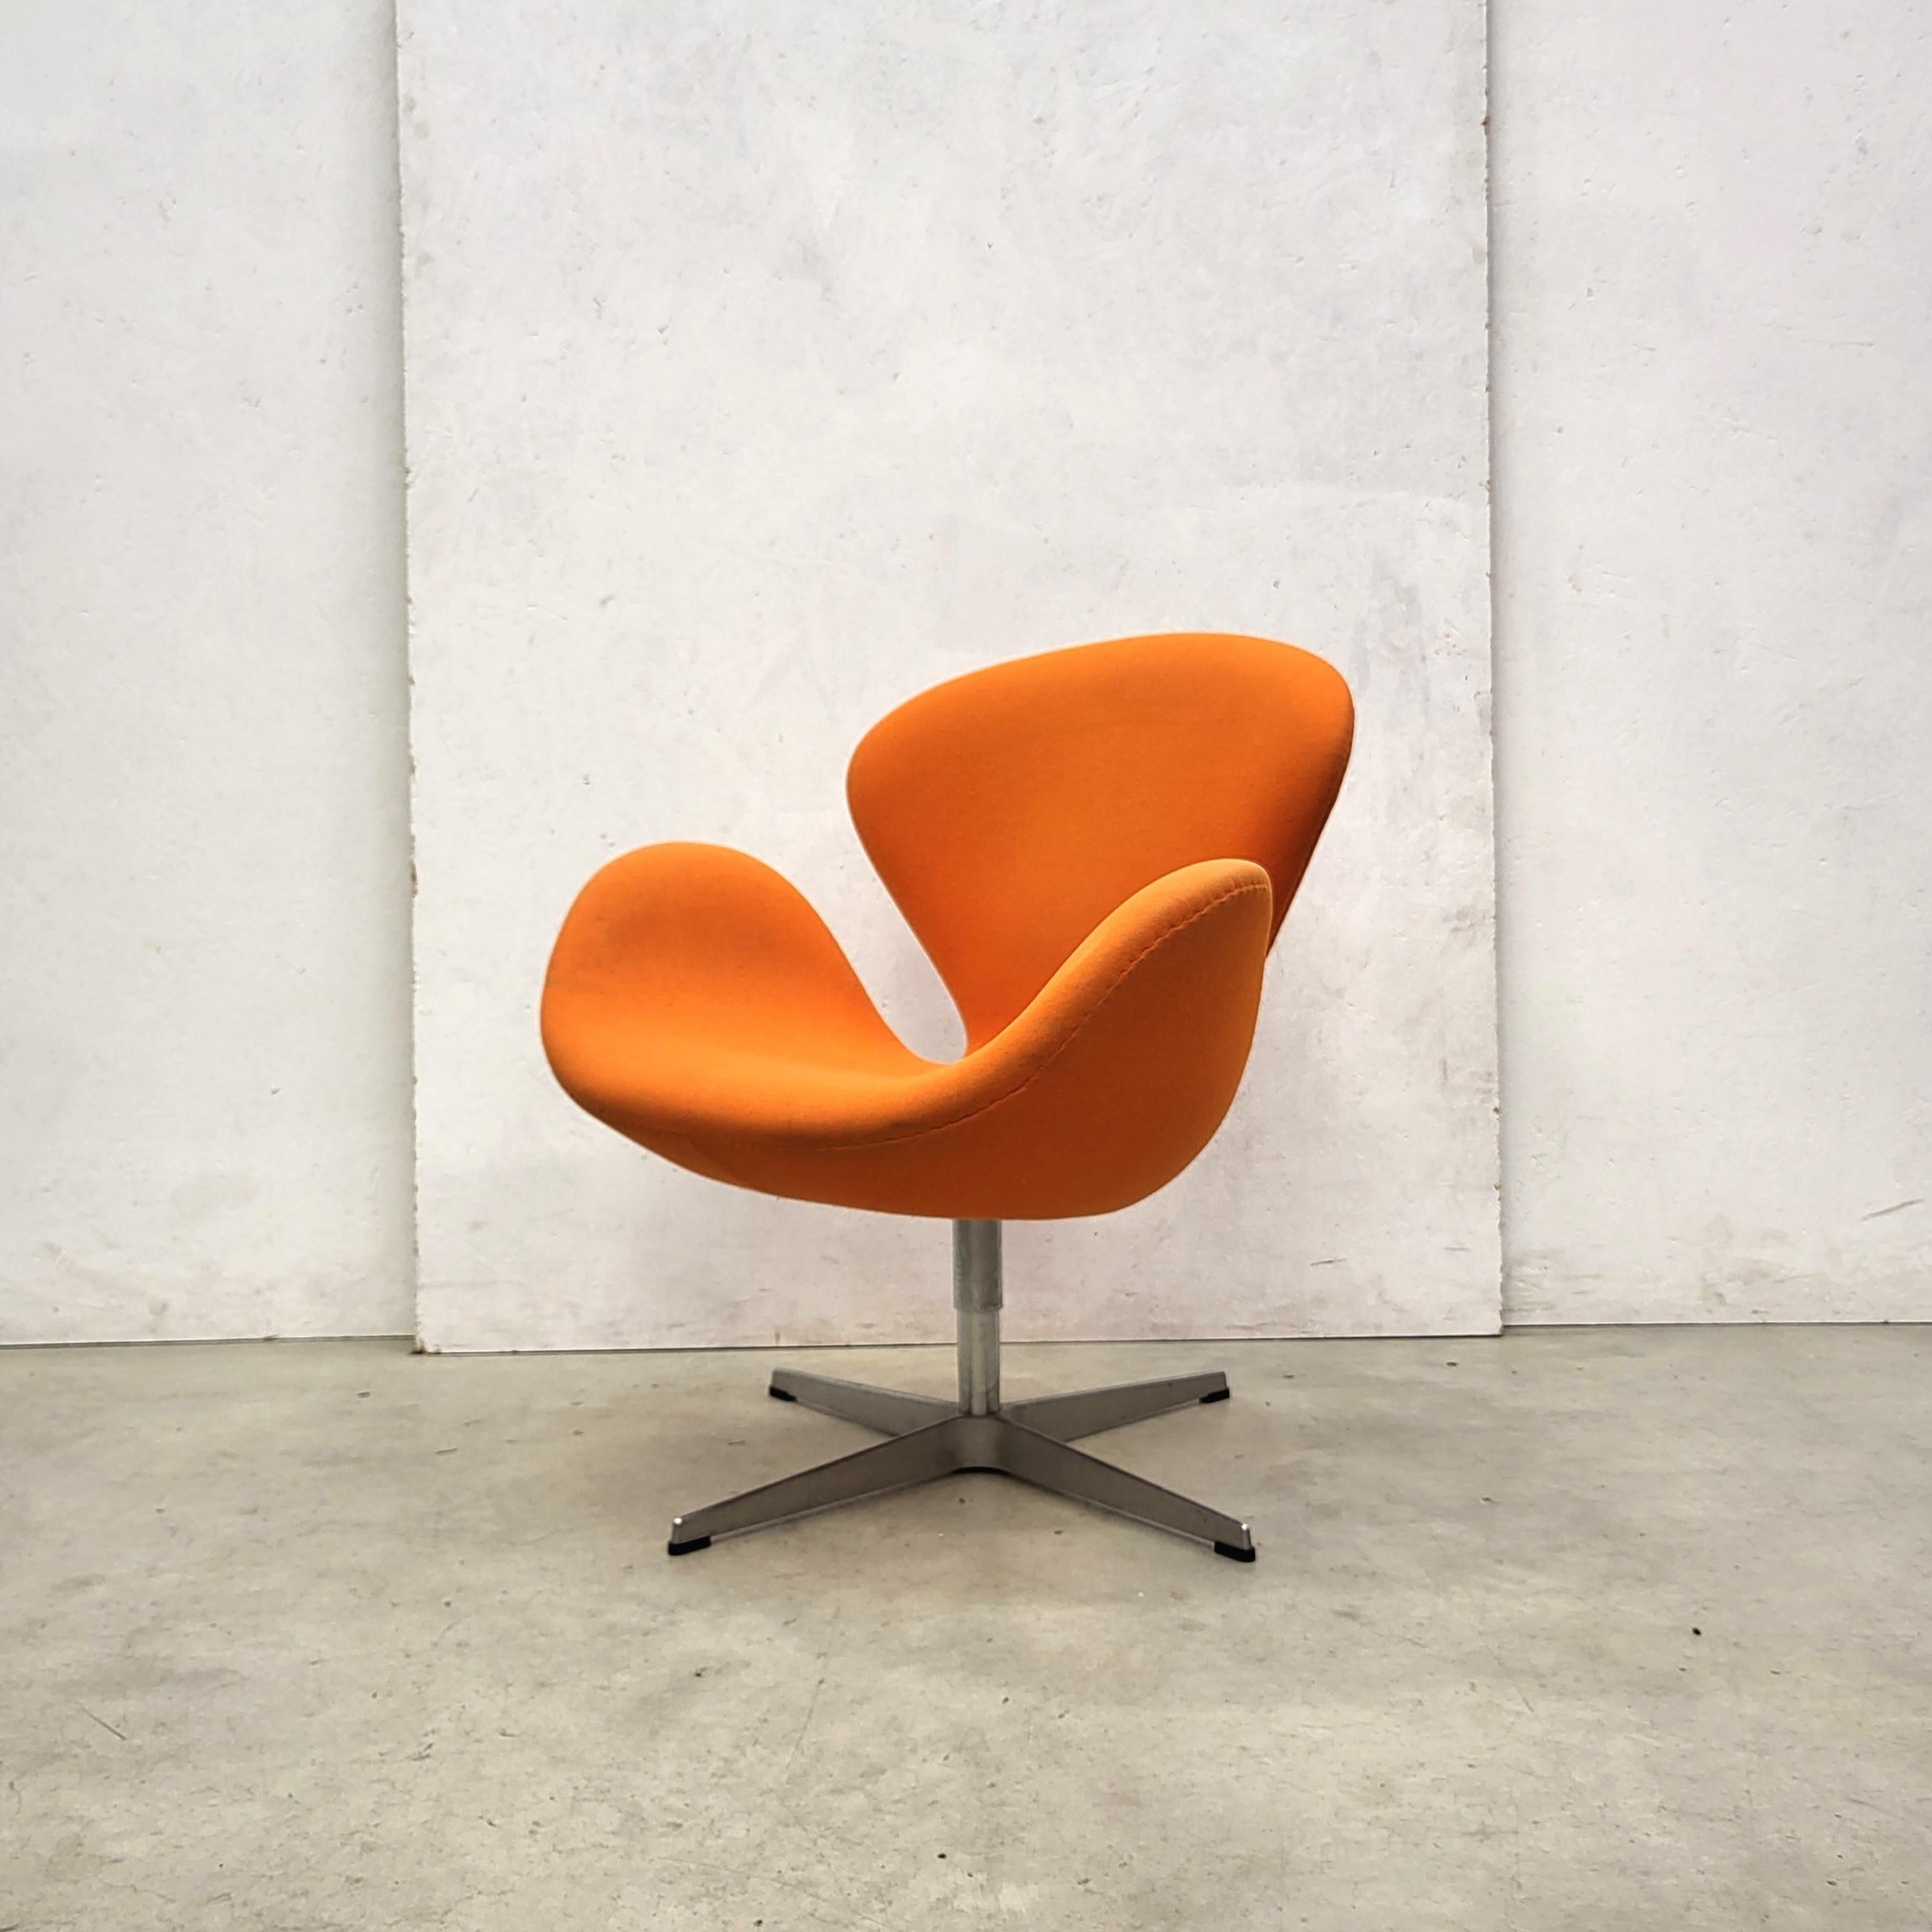 Aluminum Swan Sofa & 2x Chair by Arne Jacobsen for Fritz Hansen 2006 Model